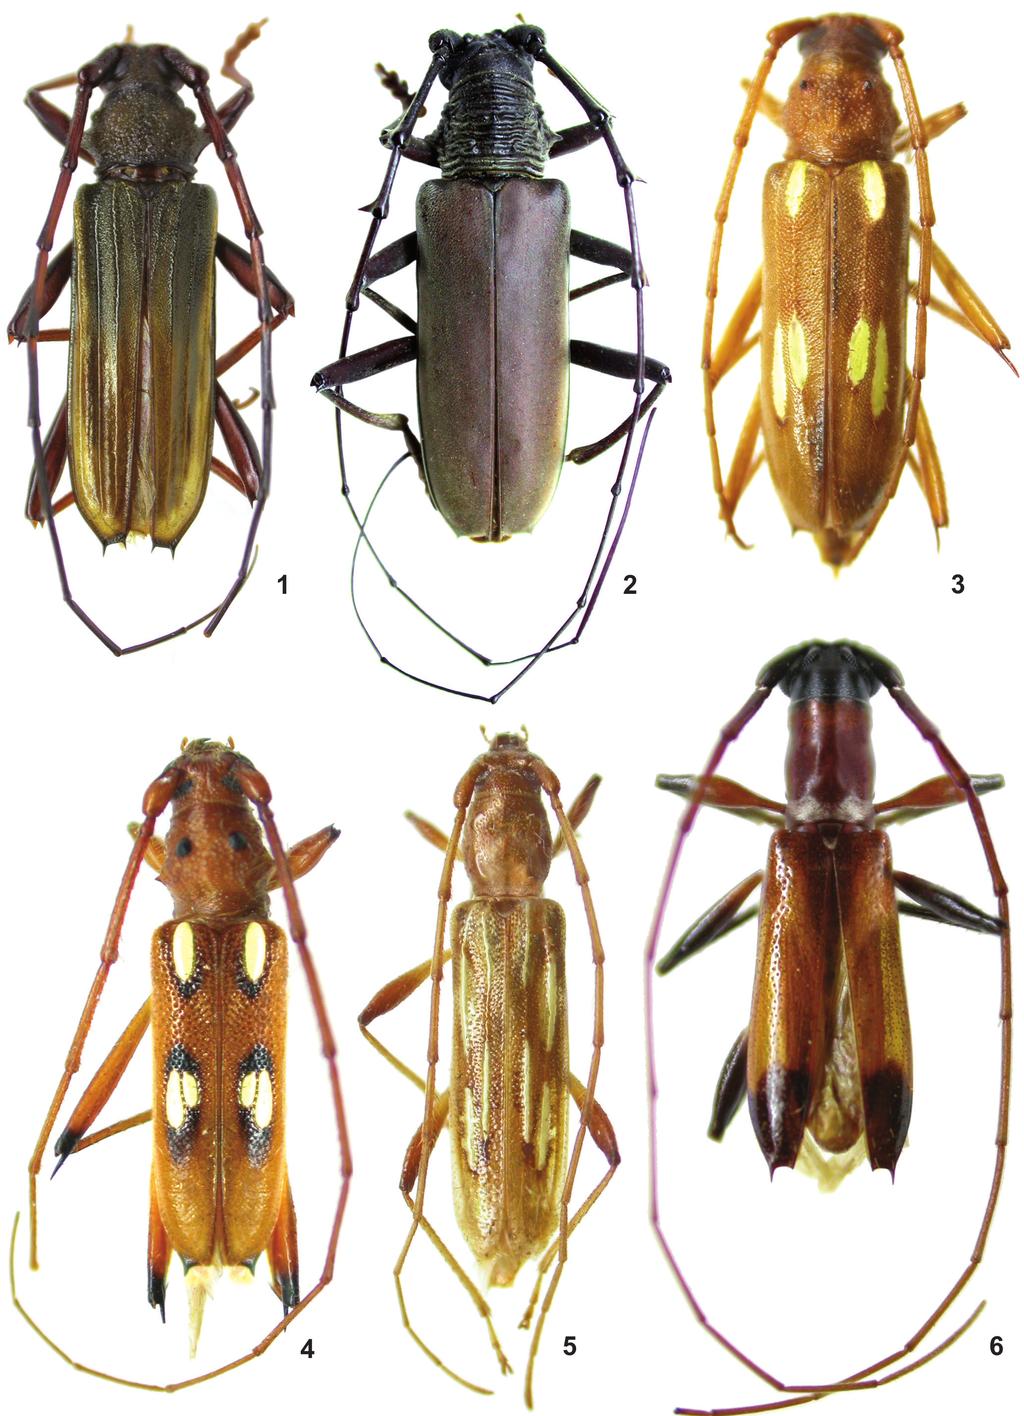 282 Martins. U.R. et al.: Cerambycidae do Maranhão. III Figuras 1 6: Habitus. 1. Chlorida inexpectata sp. nov., holótipo macho, comprimento, 14,4 mm; 2. Jupoata germana sp. nov., holótipo macho, comprimento, 37,5 mm; 3.